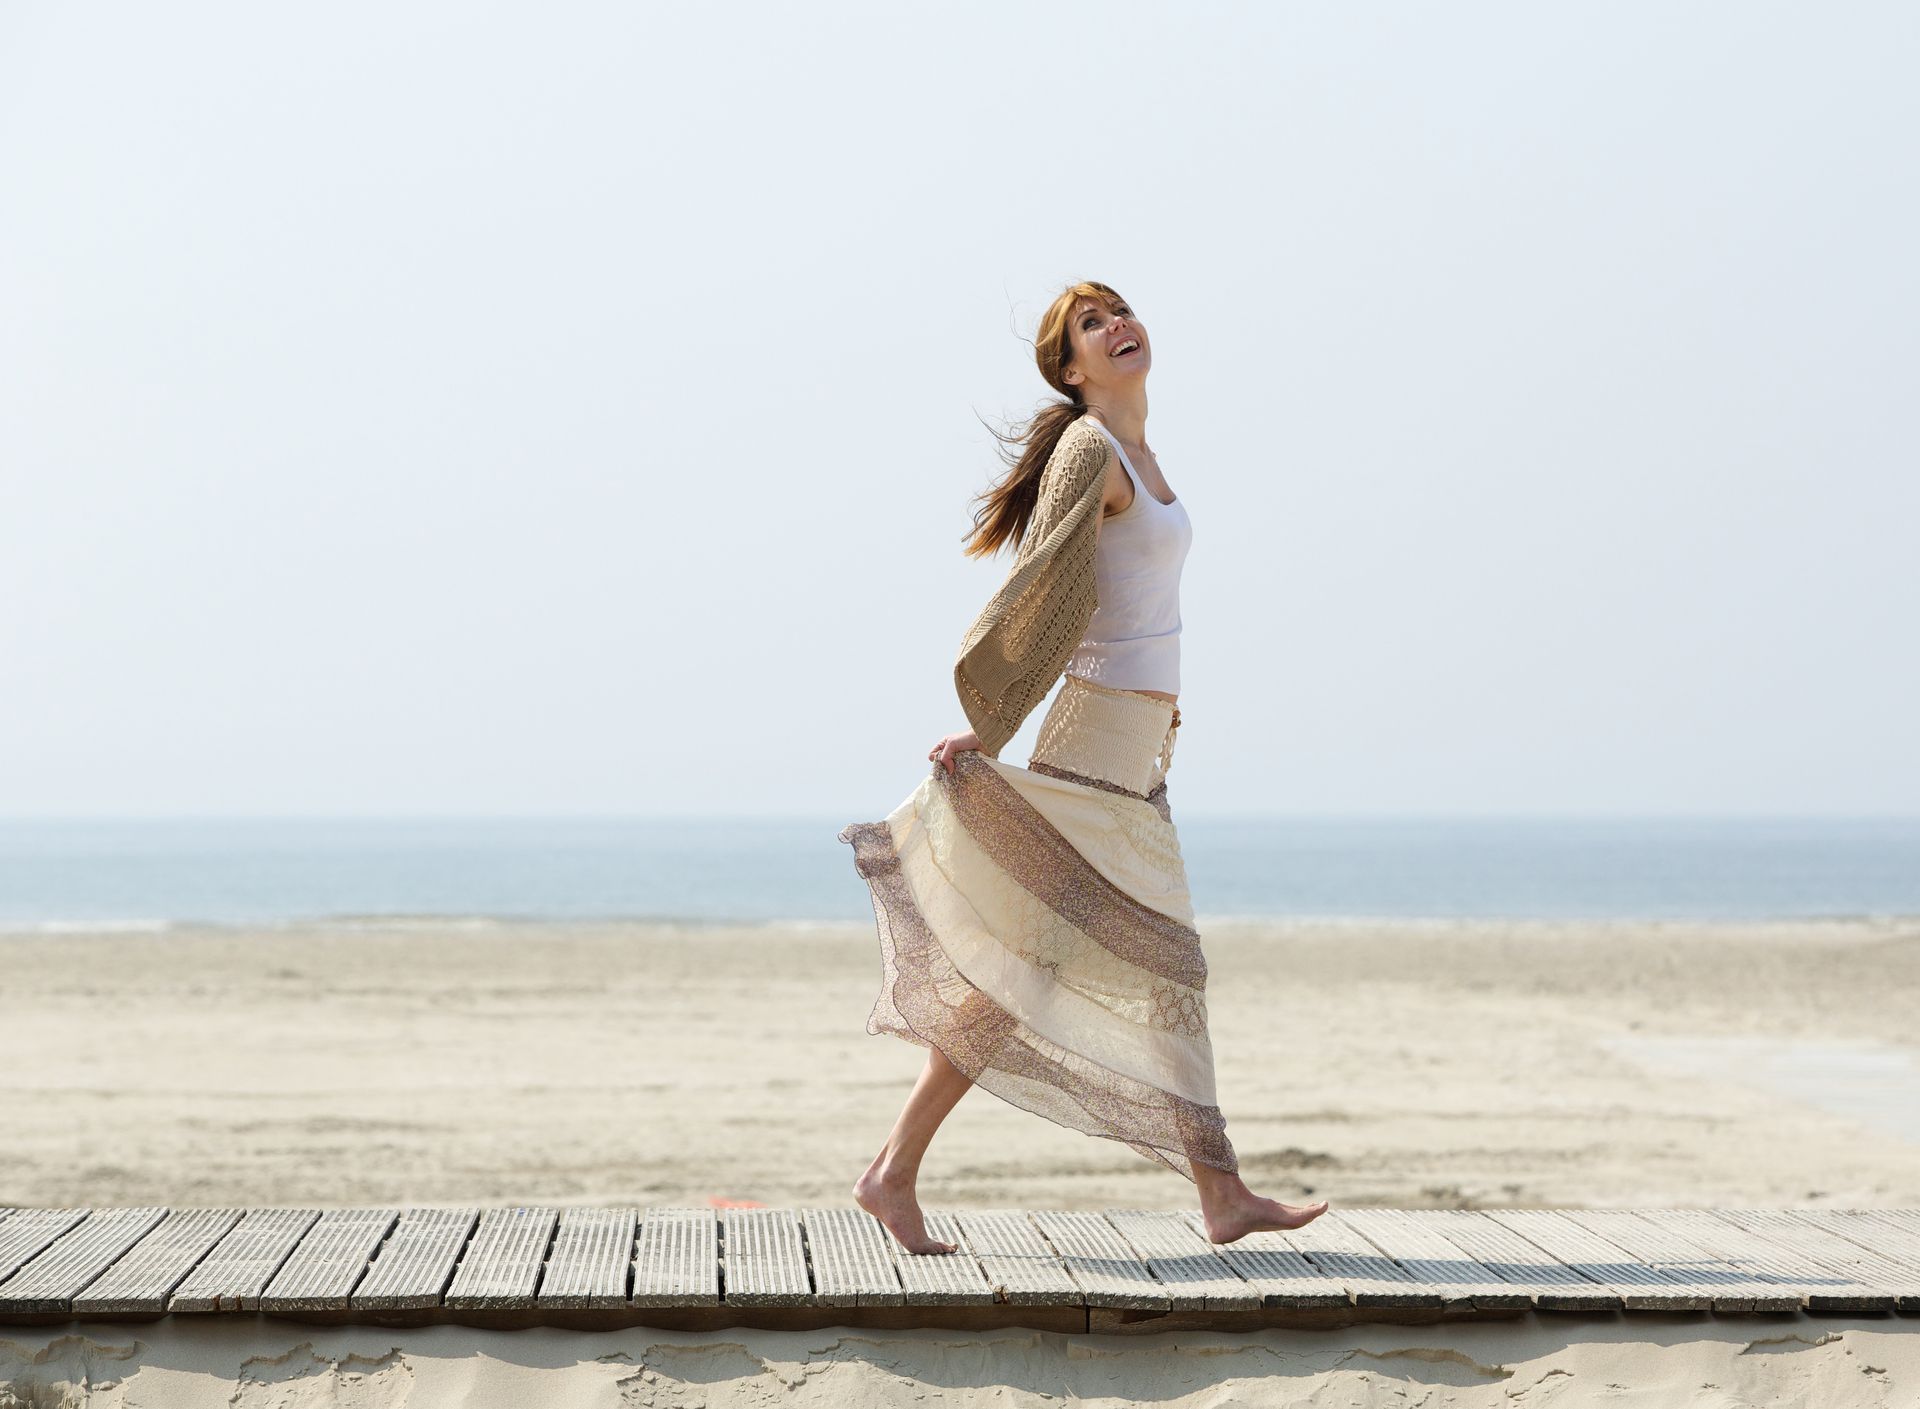 a woman is walking barefoot on a boardwalk on the beach